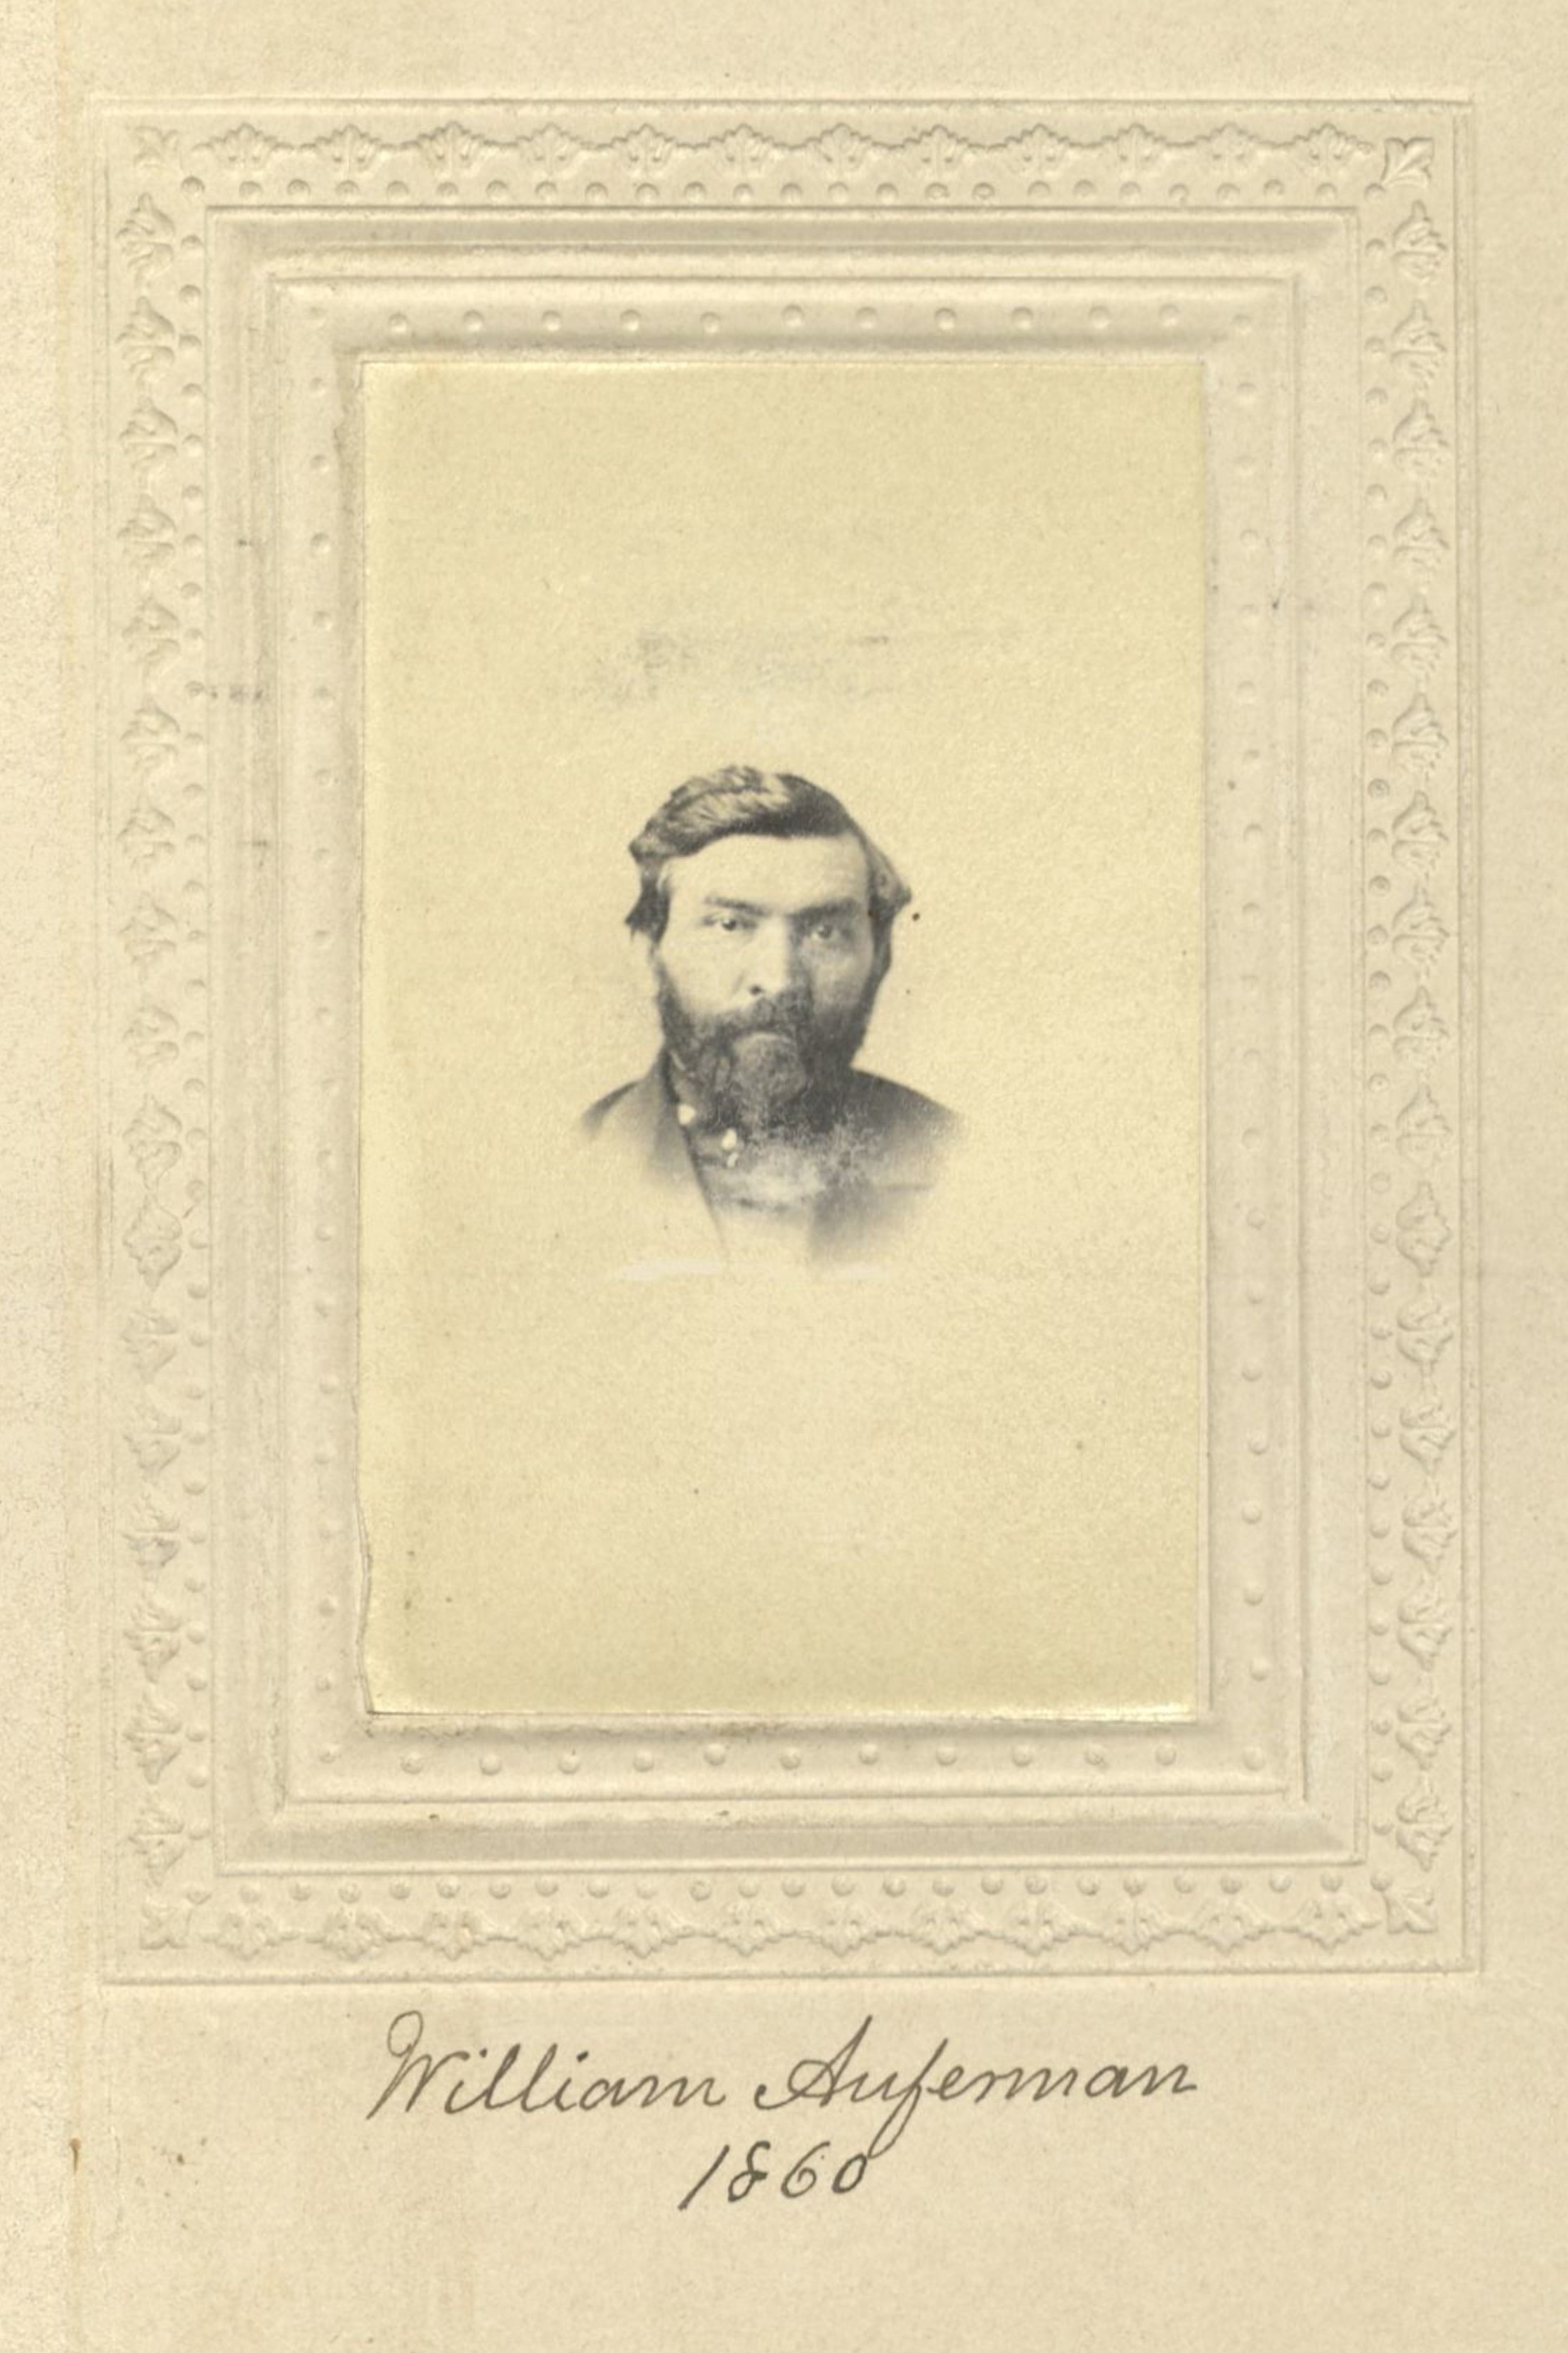 Member portrait of William Aufermann